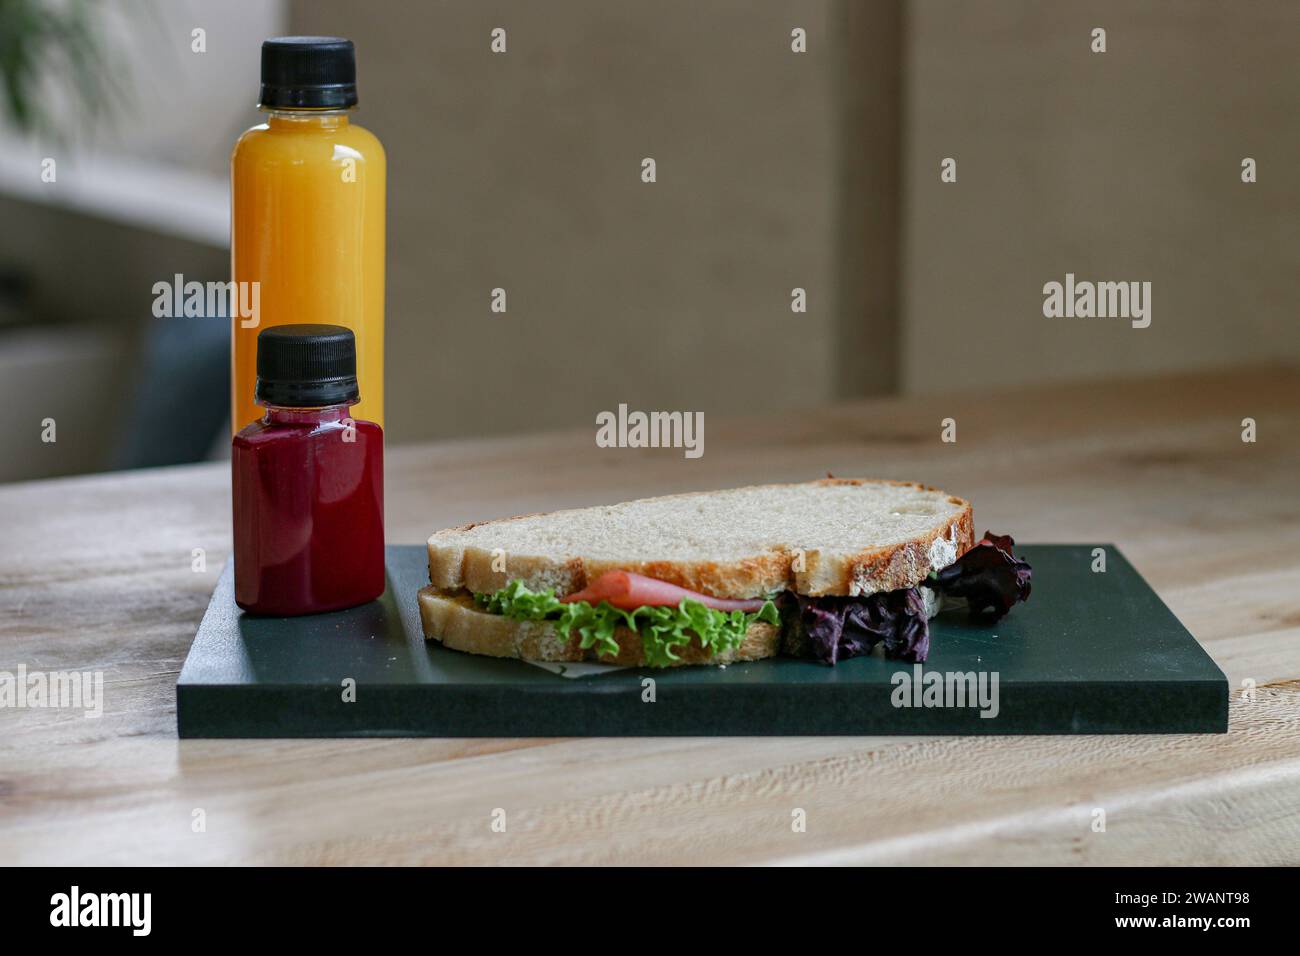 Hamburger avec laitue et fromage sur planche à découper en bois avec bouteille de jus sur la table Banque D'Images